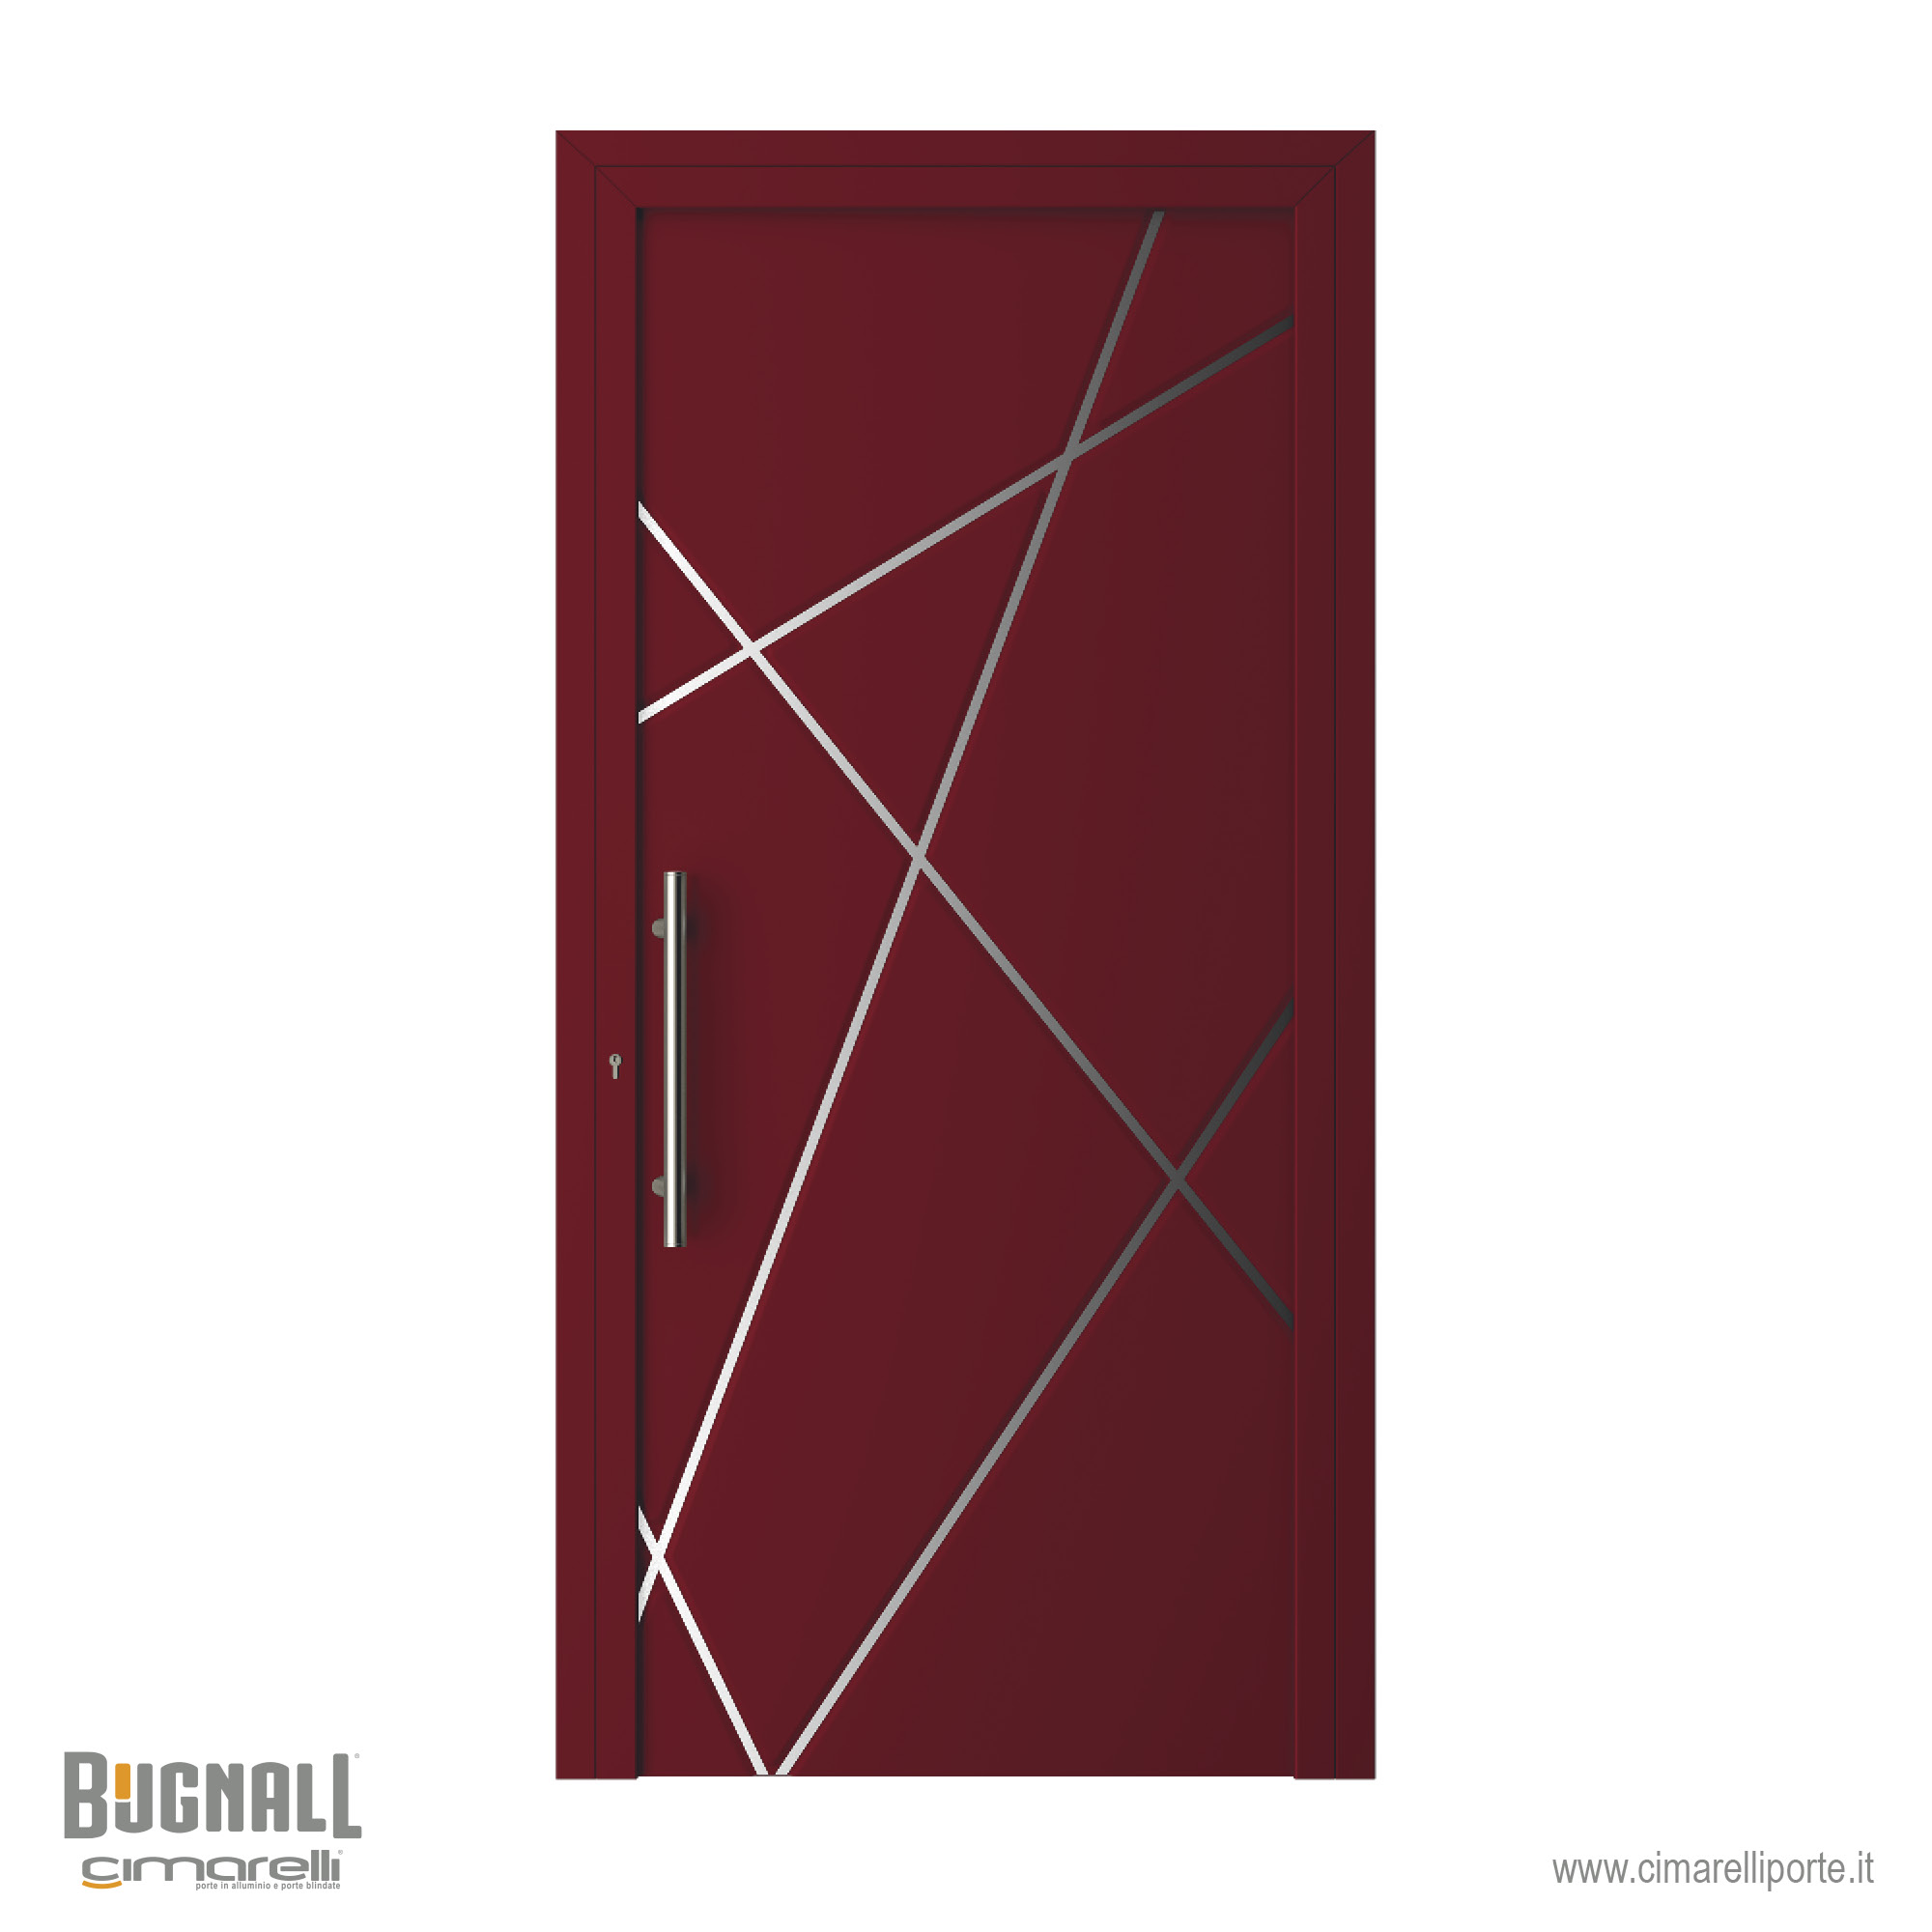 Modello 4620 – Emanuele Nonni design per Bugnall – Cimarelli